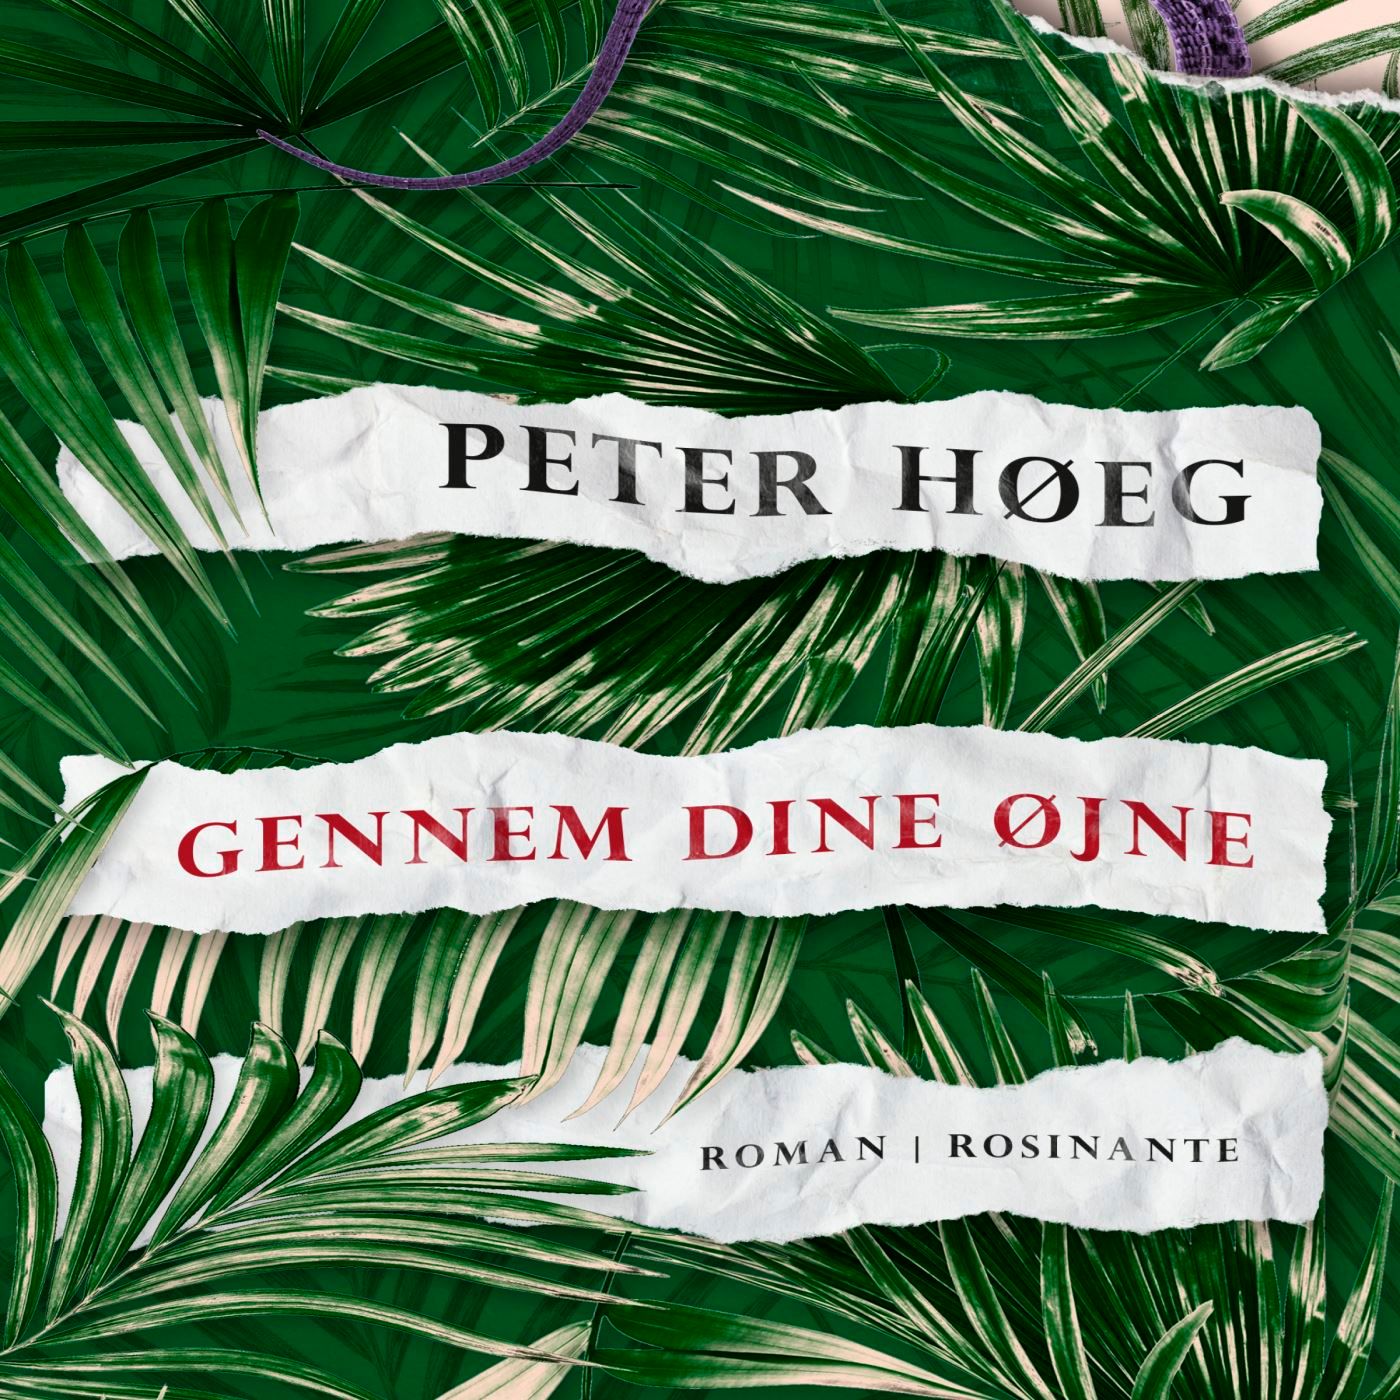 Gennem dine øjne, lydbog af Peter Høeg